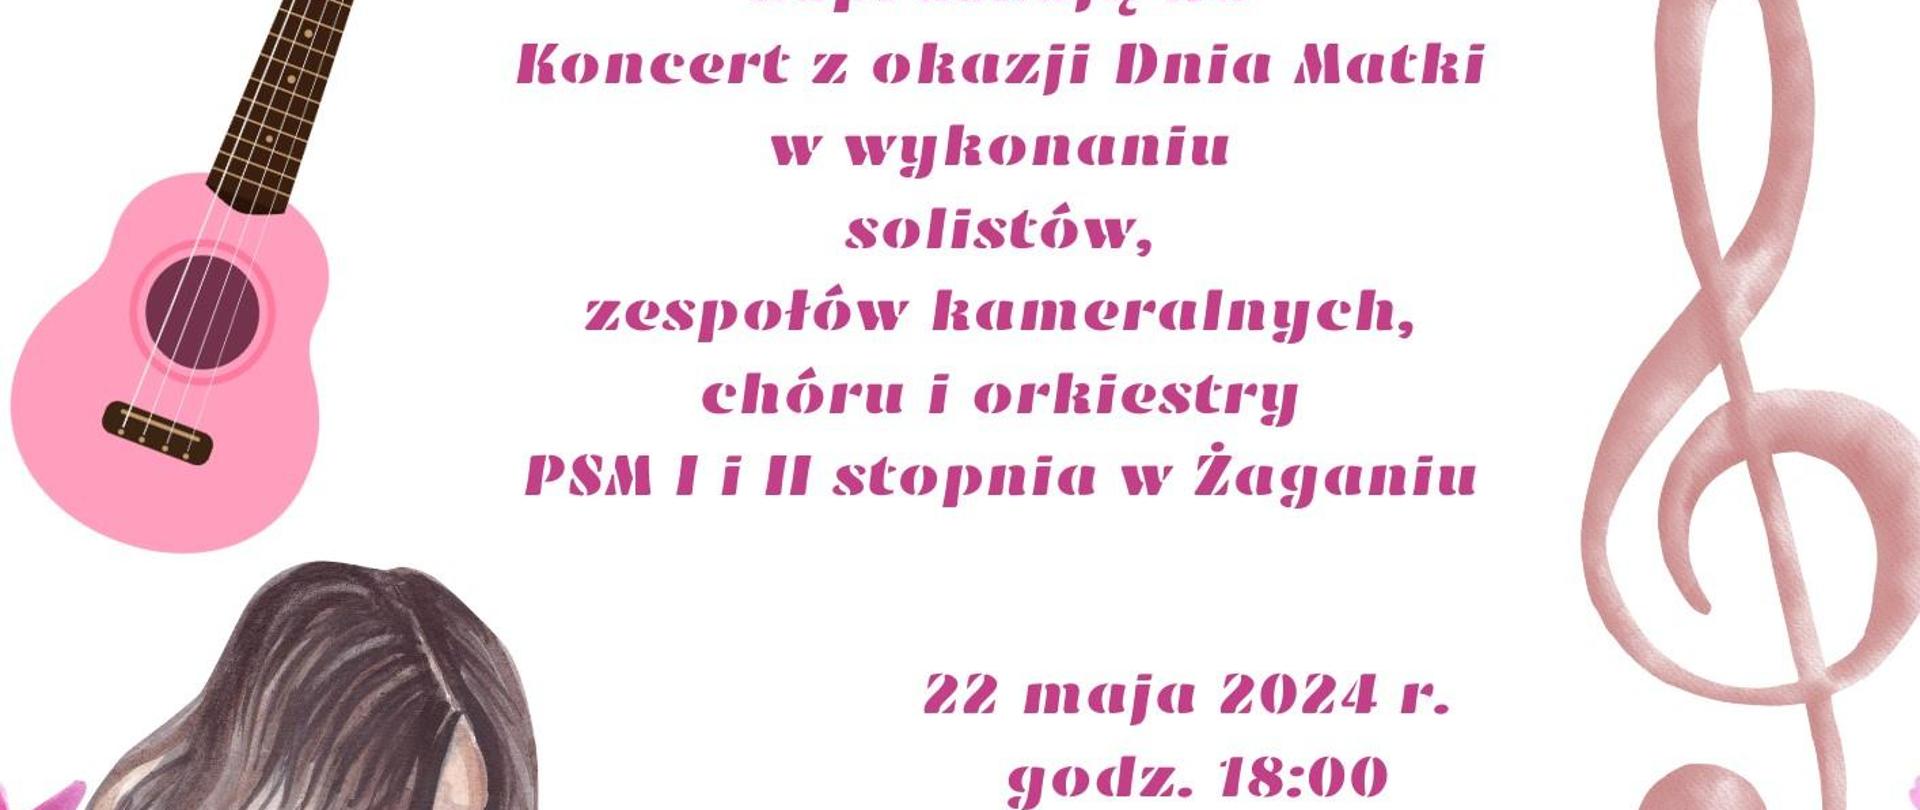 Na białym tle, u góry różowe kwiaty, po lewej strony logotyp ŻPK, po prawej stronie logotyp PSM I i II stopnia w Żaganiu. Na dole grafika matki trzymającej na kolanach dziecko. W środku grafiki instrumentów: gitary i trąbki, na dole symbole różowych kwiatów. 